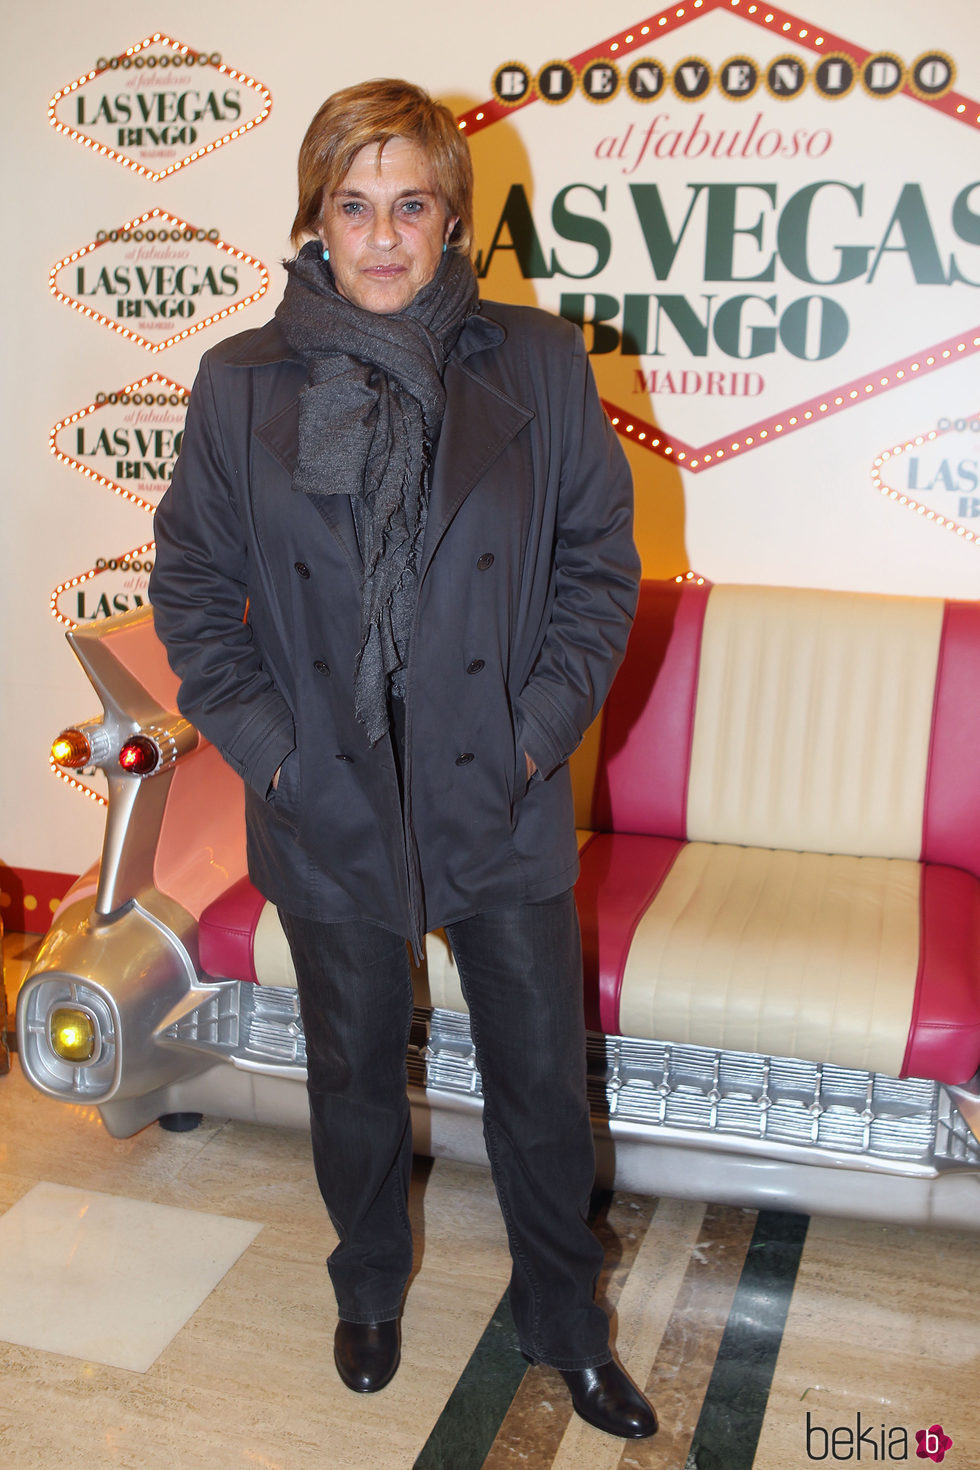 Chelo García Cortés en Bingo Las Vegas